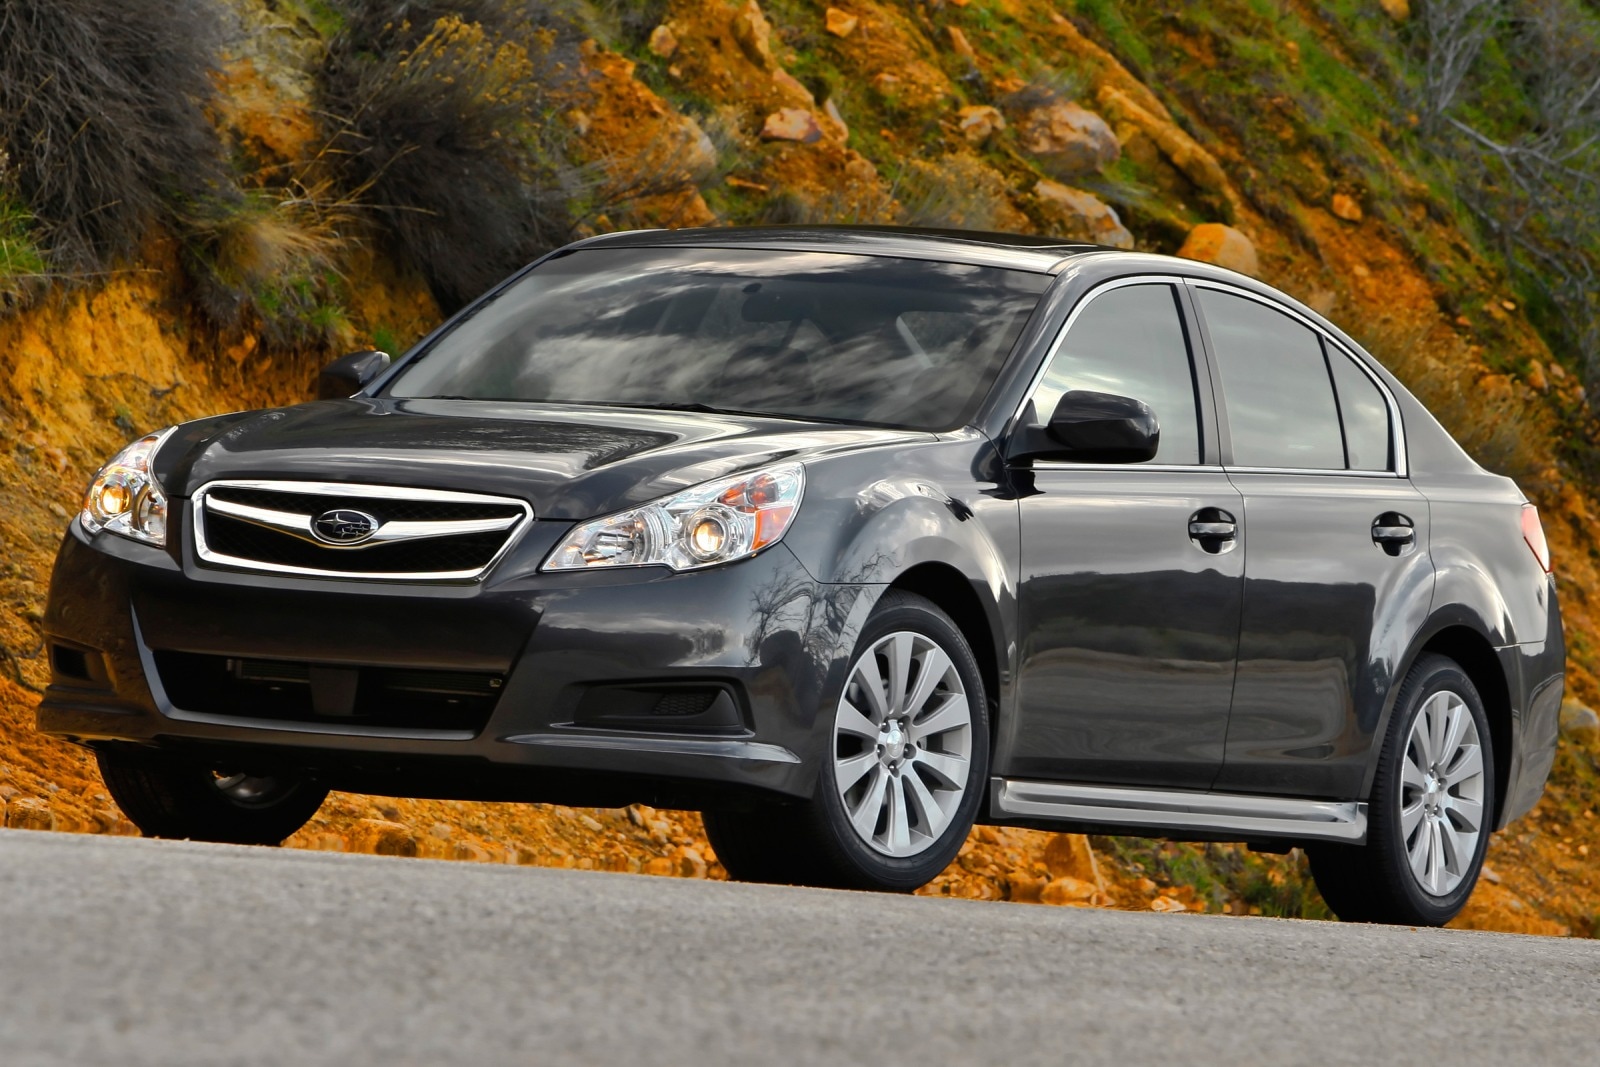 2010 Subaru Legacy Review & Ratings | Edmunds